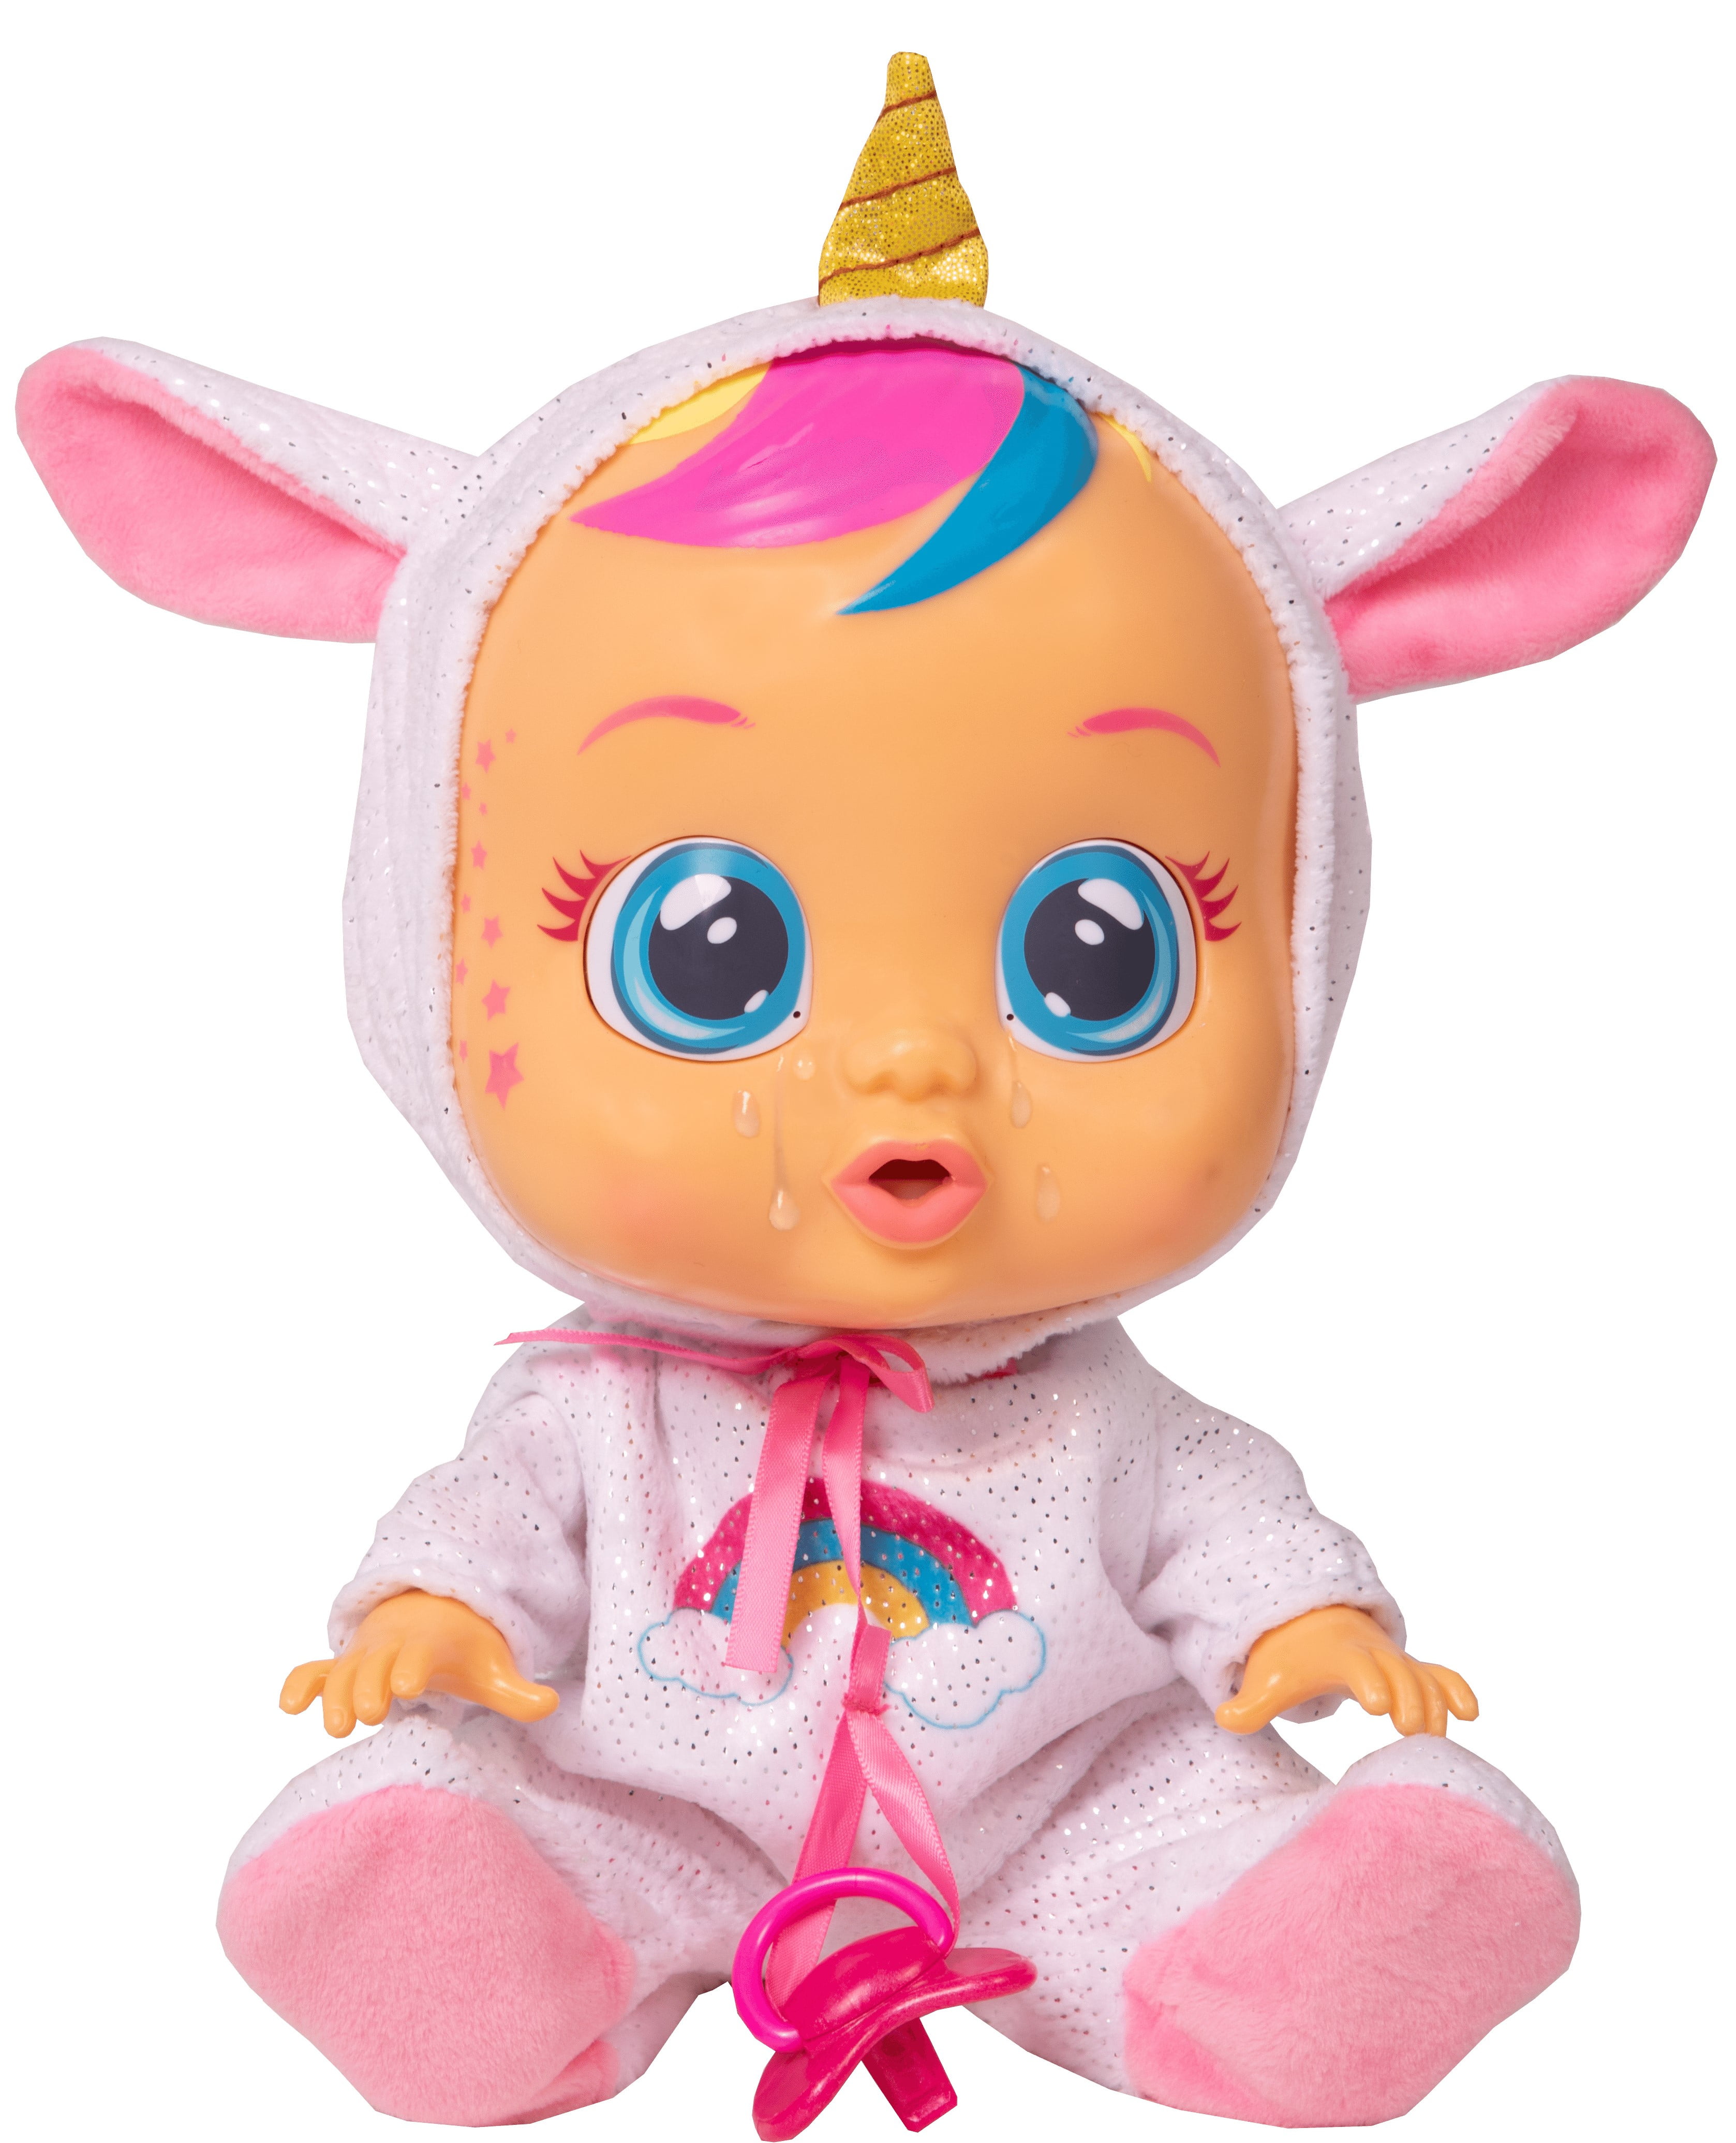 Preparación Vástago Allí Cry Babies Dreamy Baby Doll (Walmart Exclusive) - Ages 18+ months -  Walmart.com